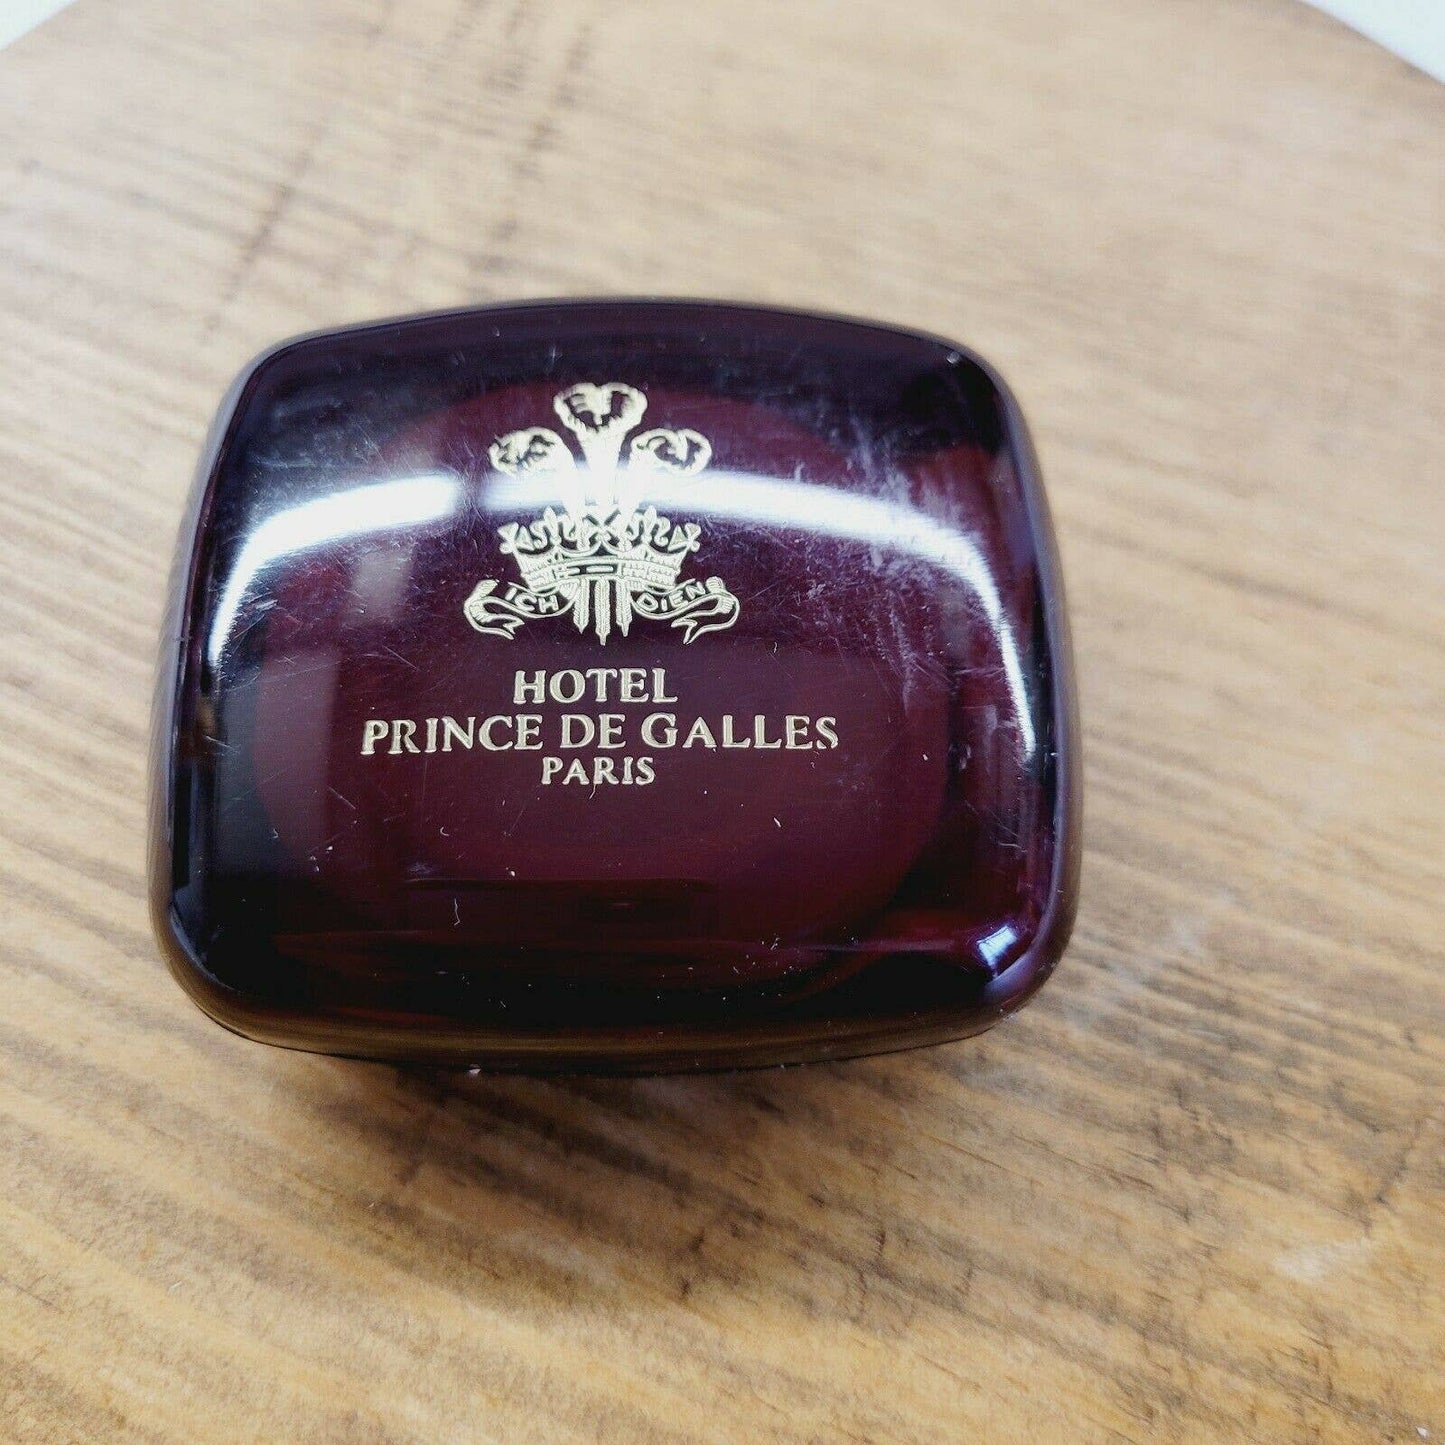 Vintage Lancome Hotel Prince de Galles Paris Soap & Soapbox.